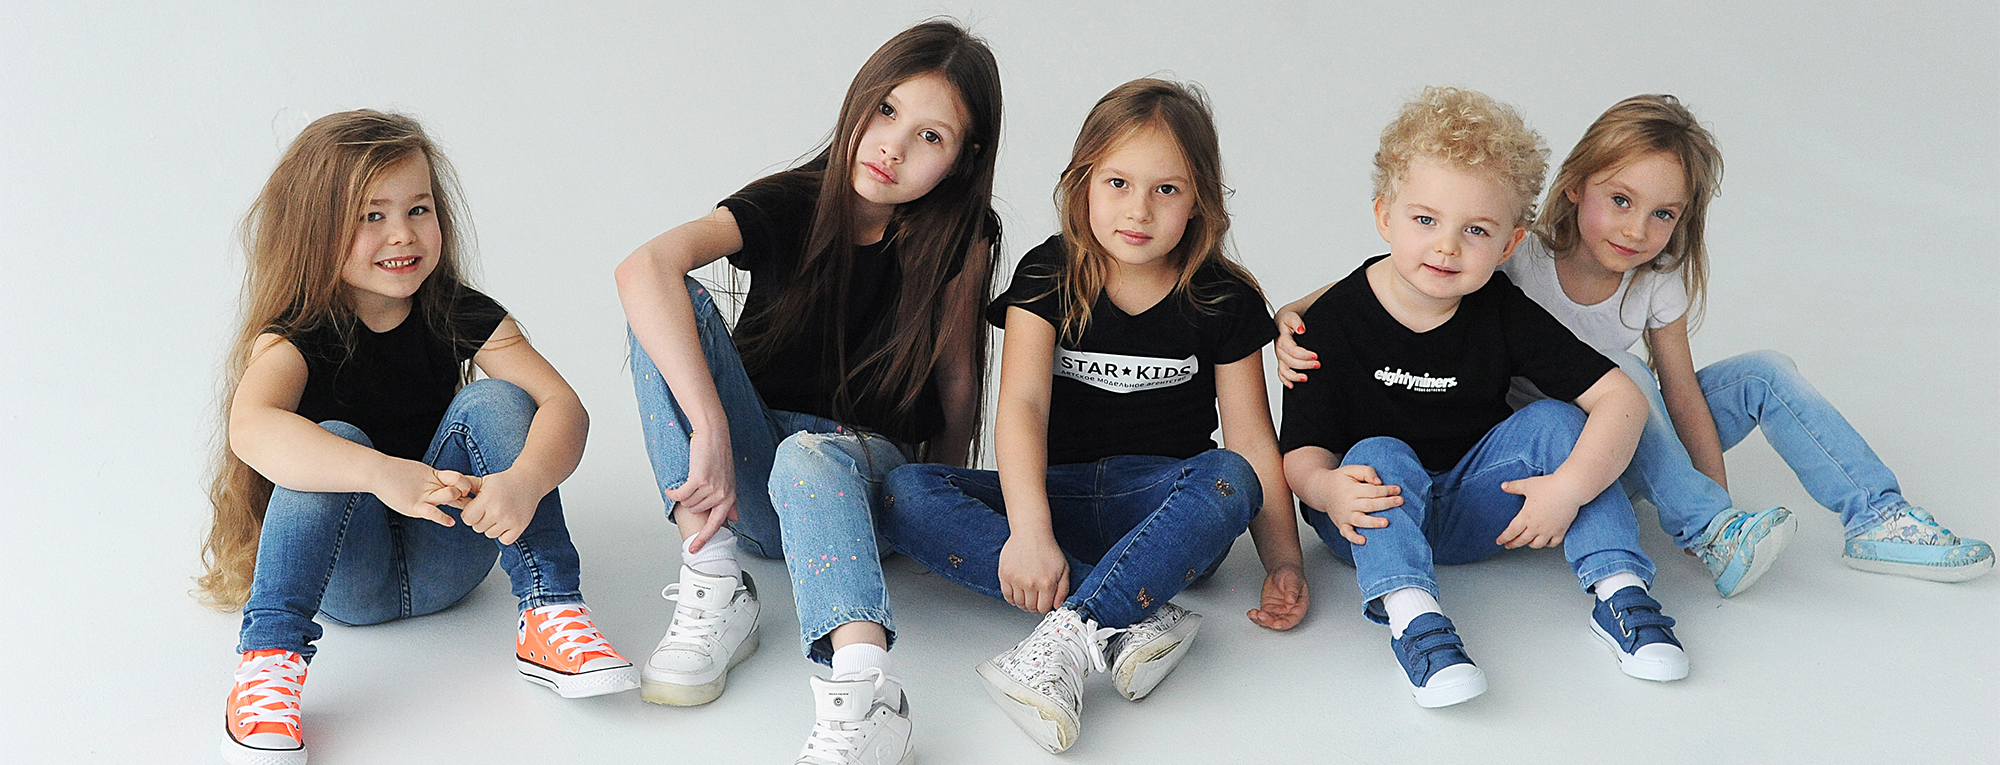 Детское модельное агентство STAR KIDS в Новосибирске